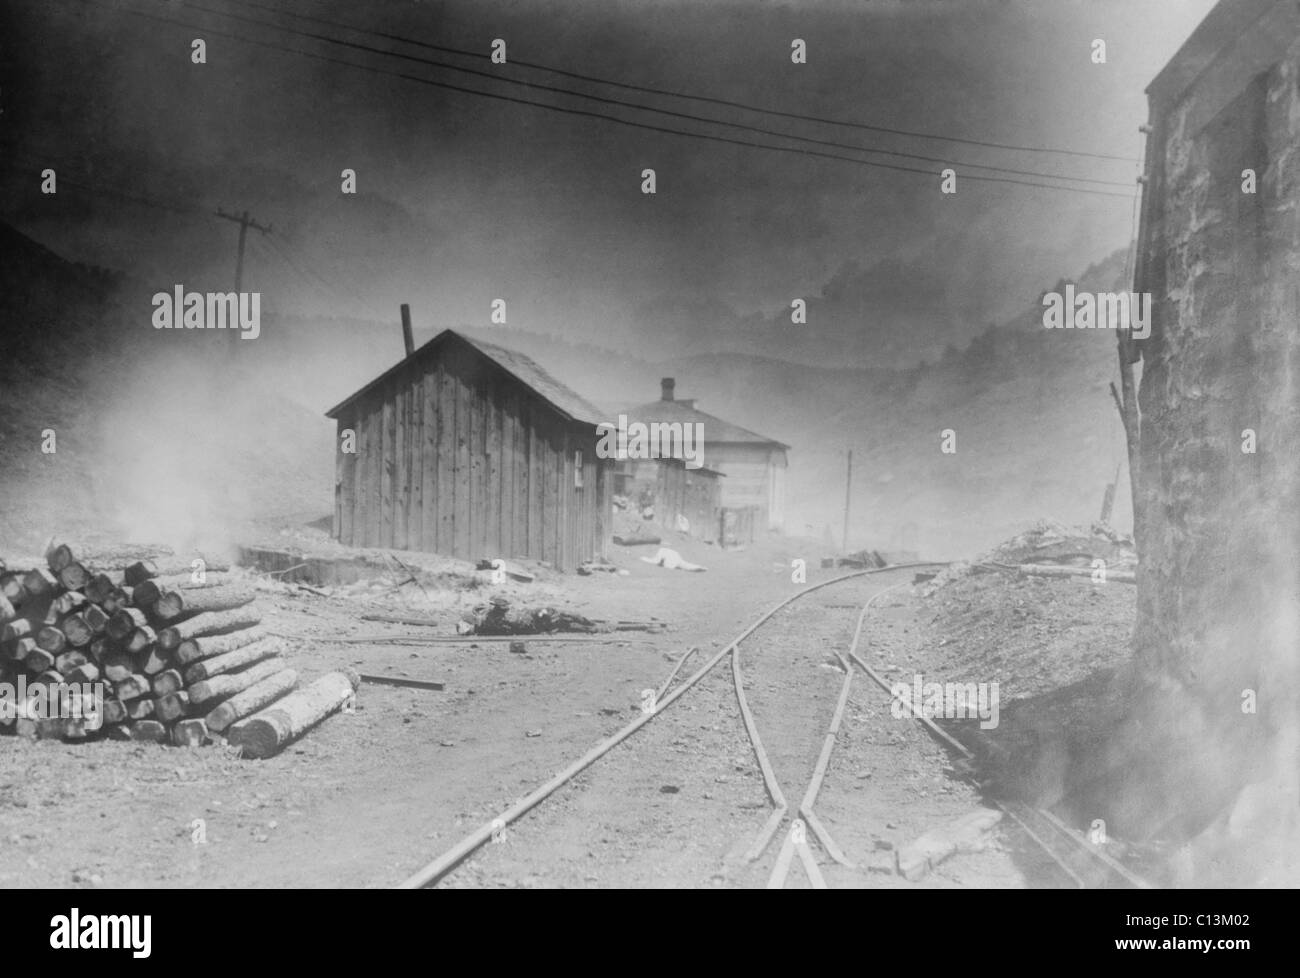 Brennen des Bergmanns Camp bei Forbes, Colorado, in langen, heftigen Schlag gegen die Colorado Fuel und Iron Company, im Besitz von John D Rockefeller Jr.s Standard Oil. 1914. Stockfoto